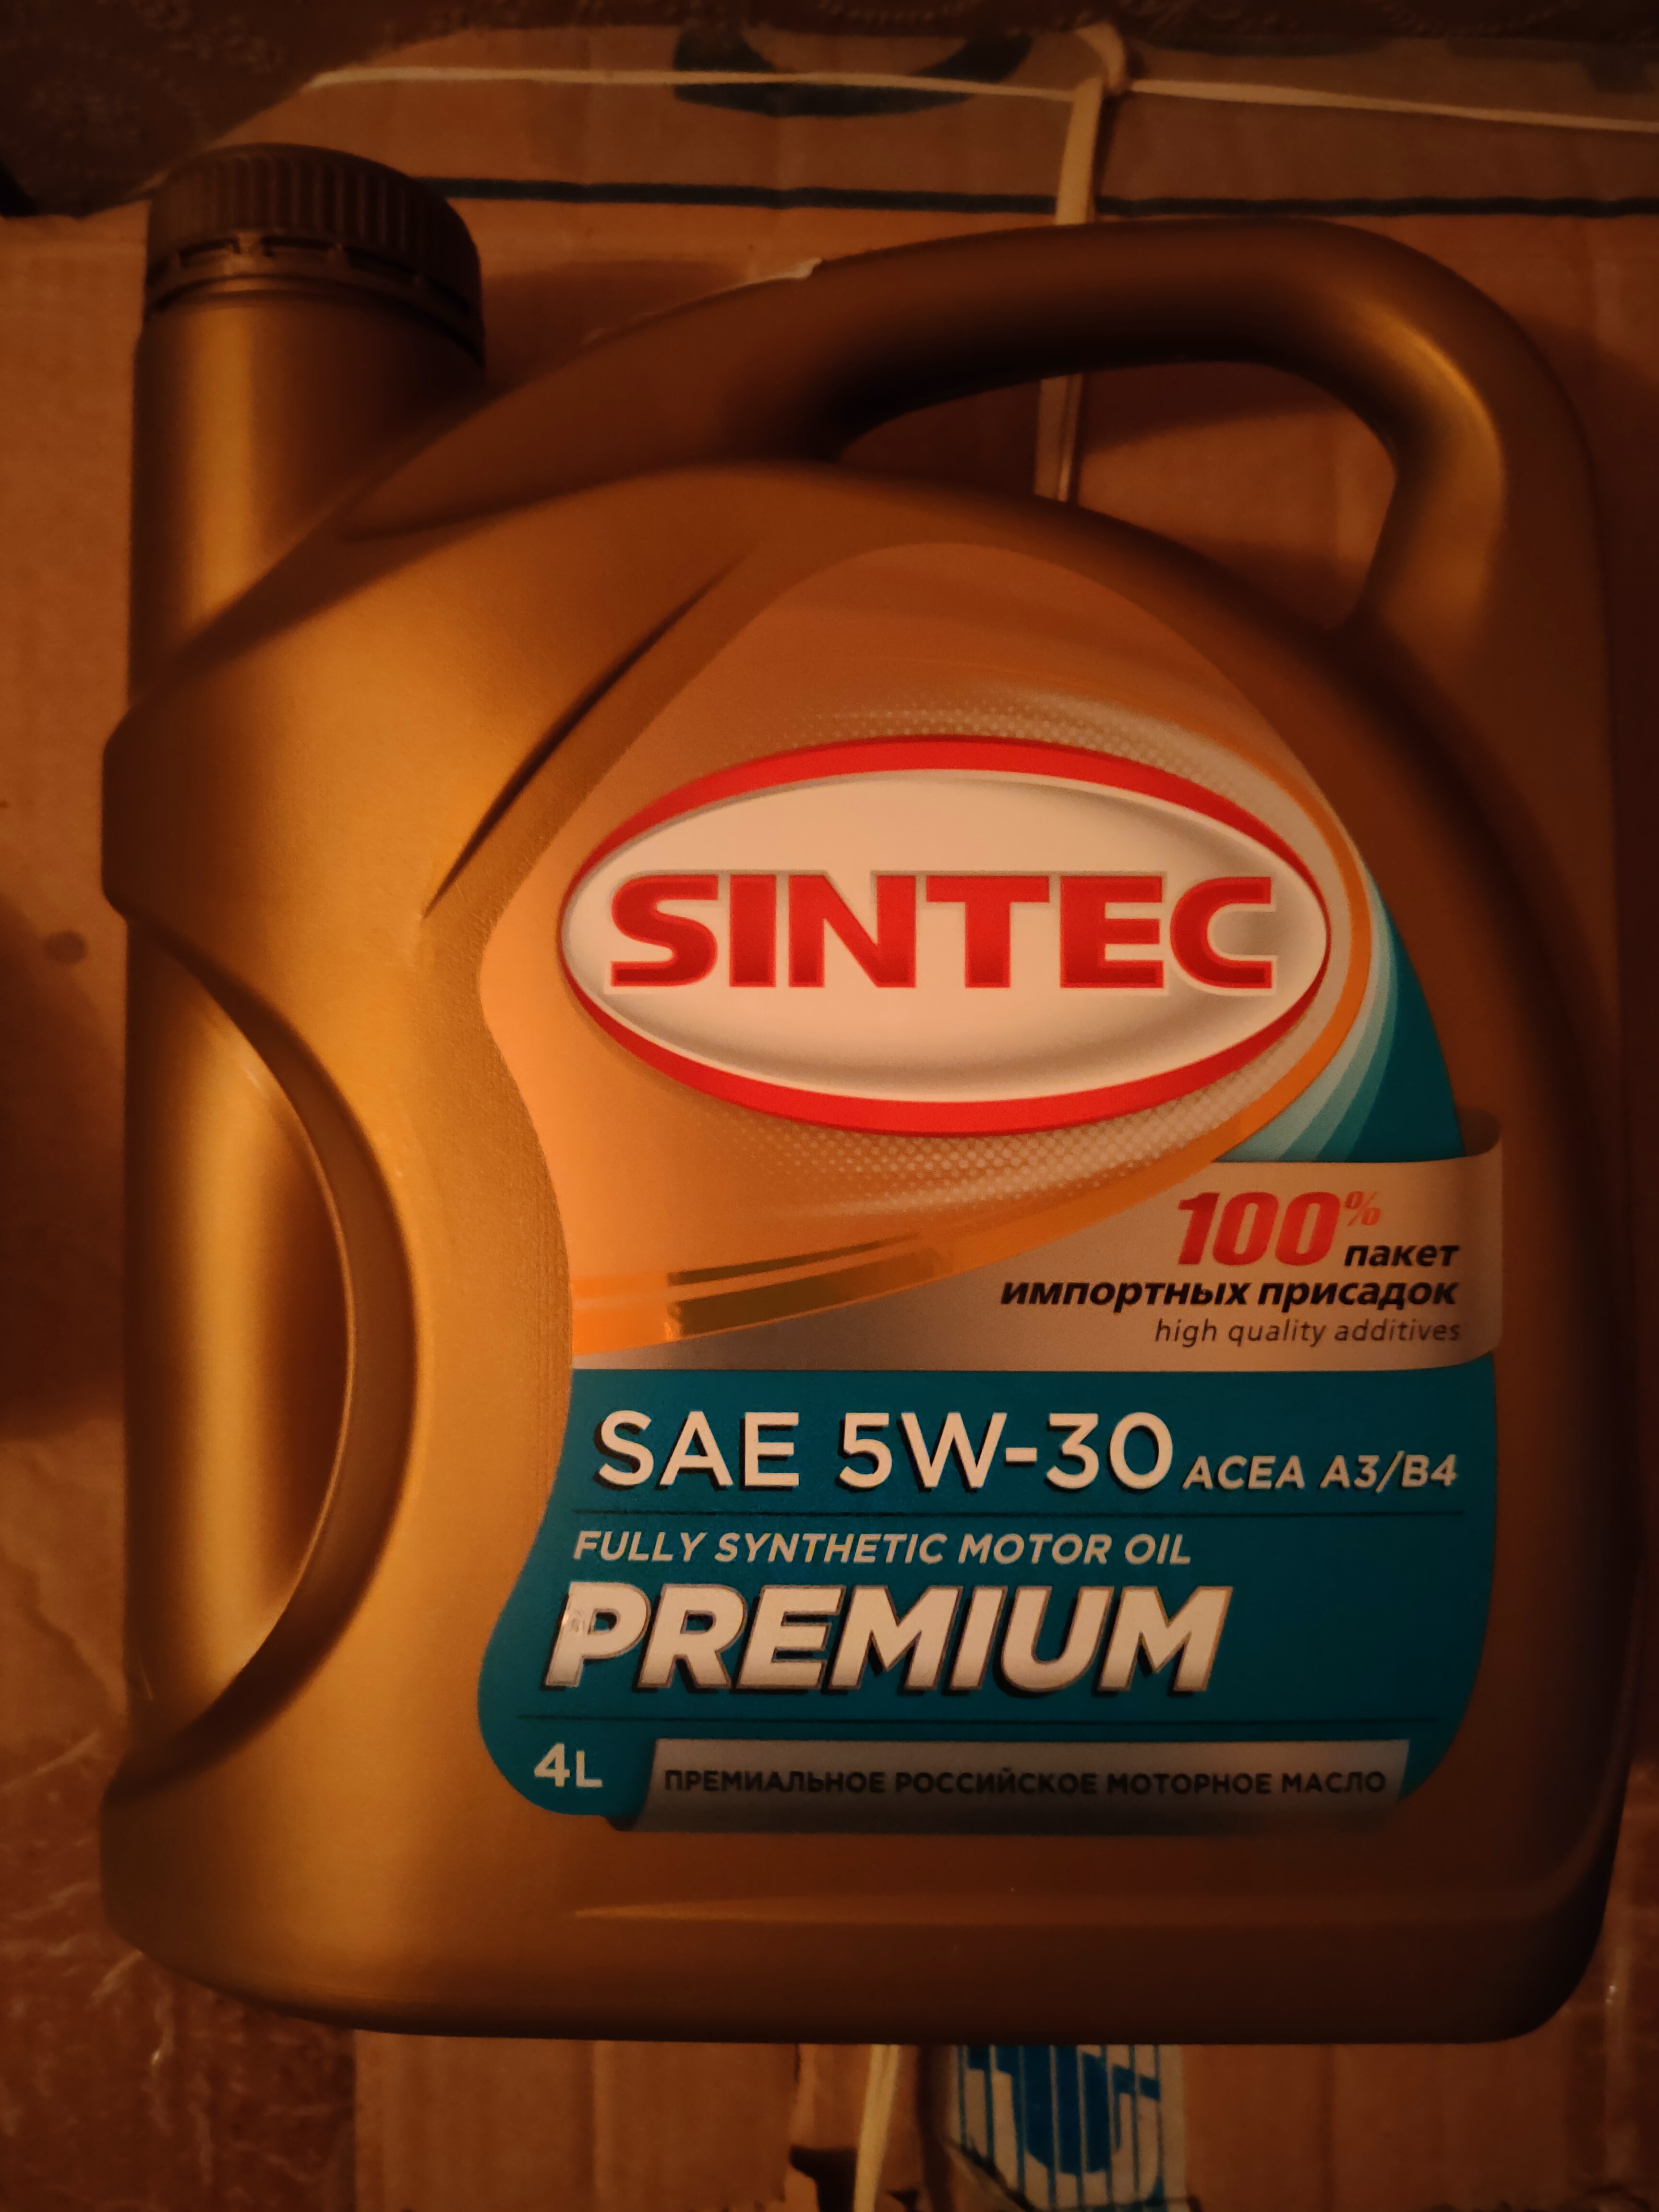 Положительные отзывы о масле SINTEC Premium SAE 5W-30 ACEA A3/B4